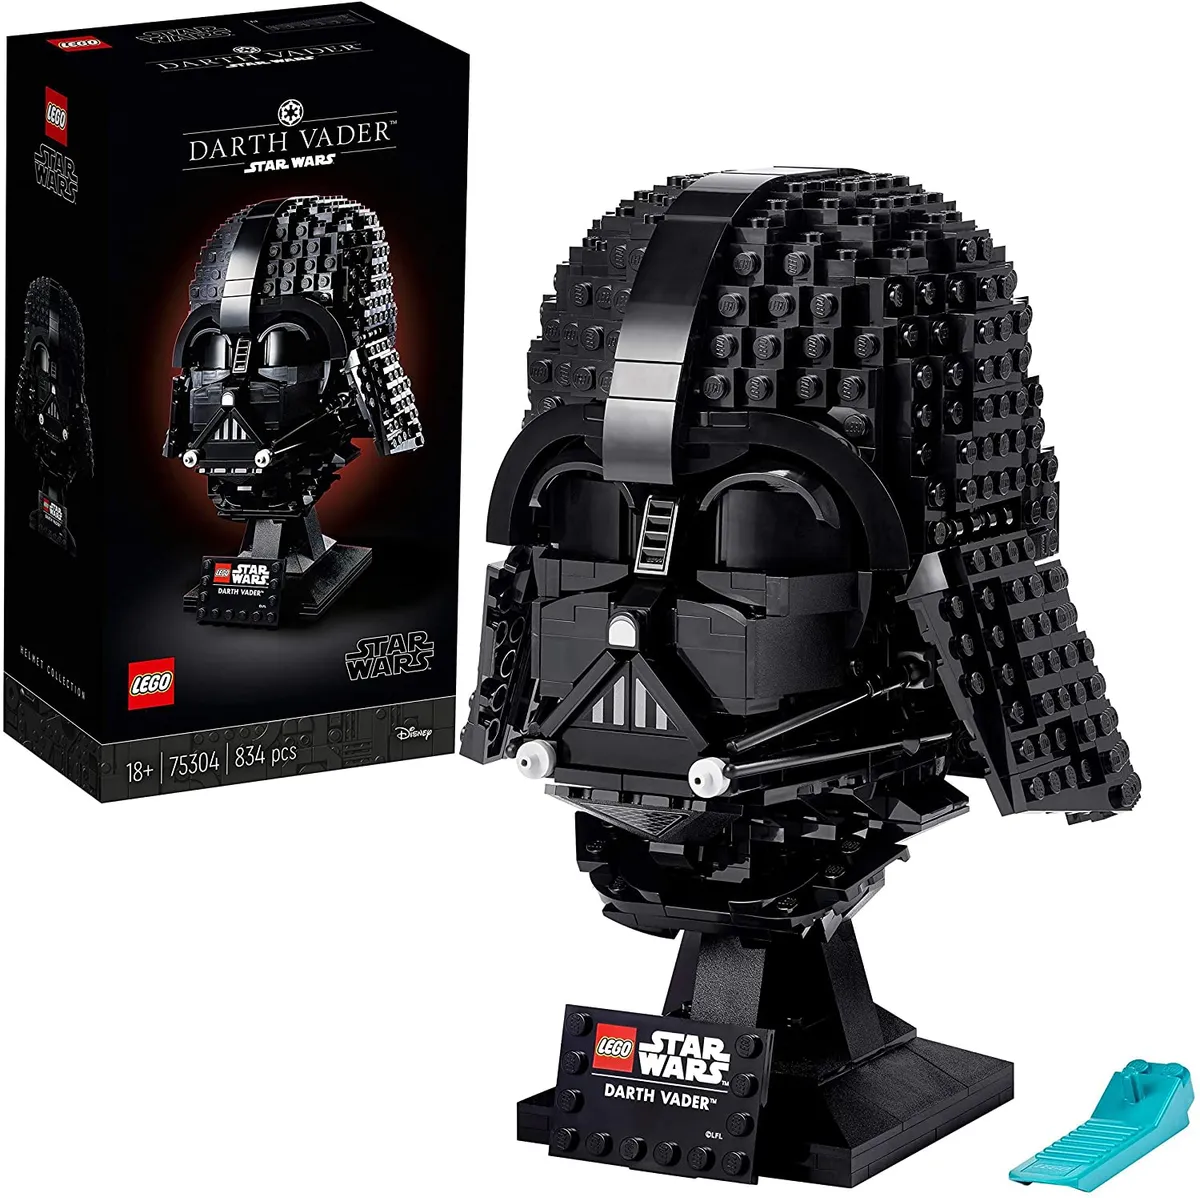 Star Wars Darth Vader Helmet made from lego